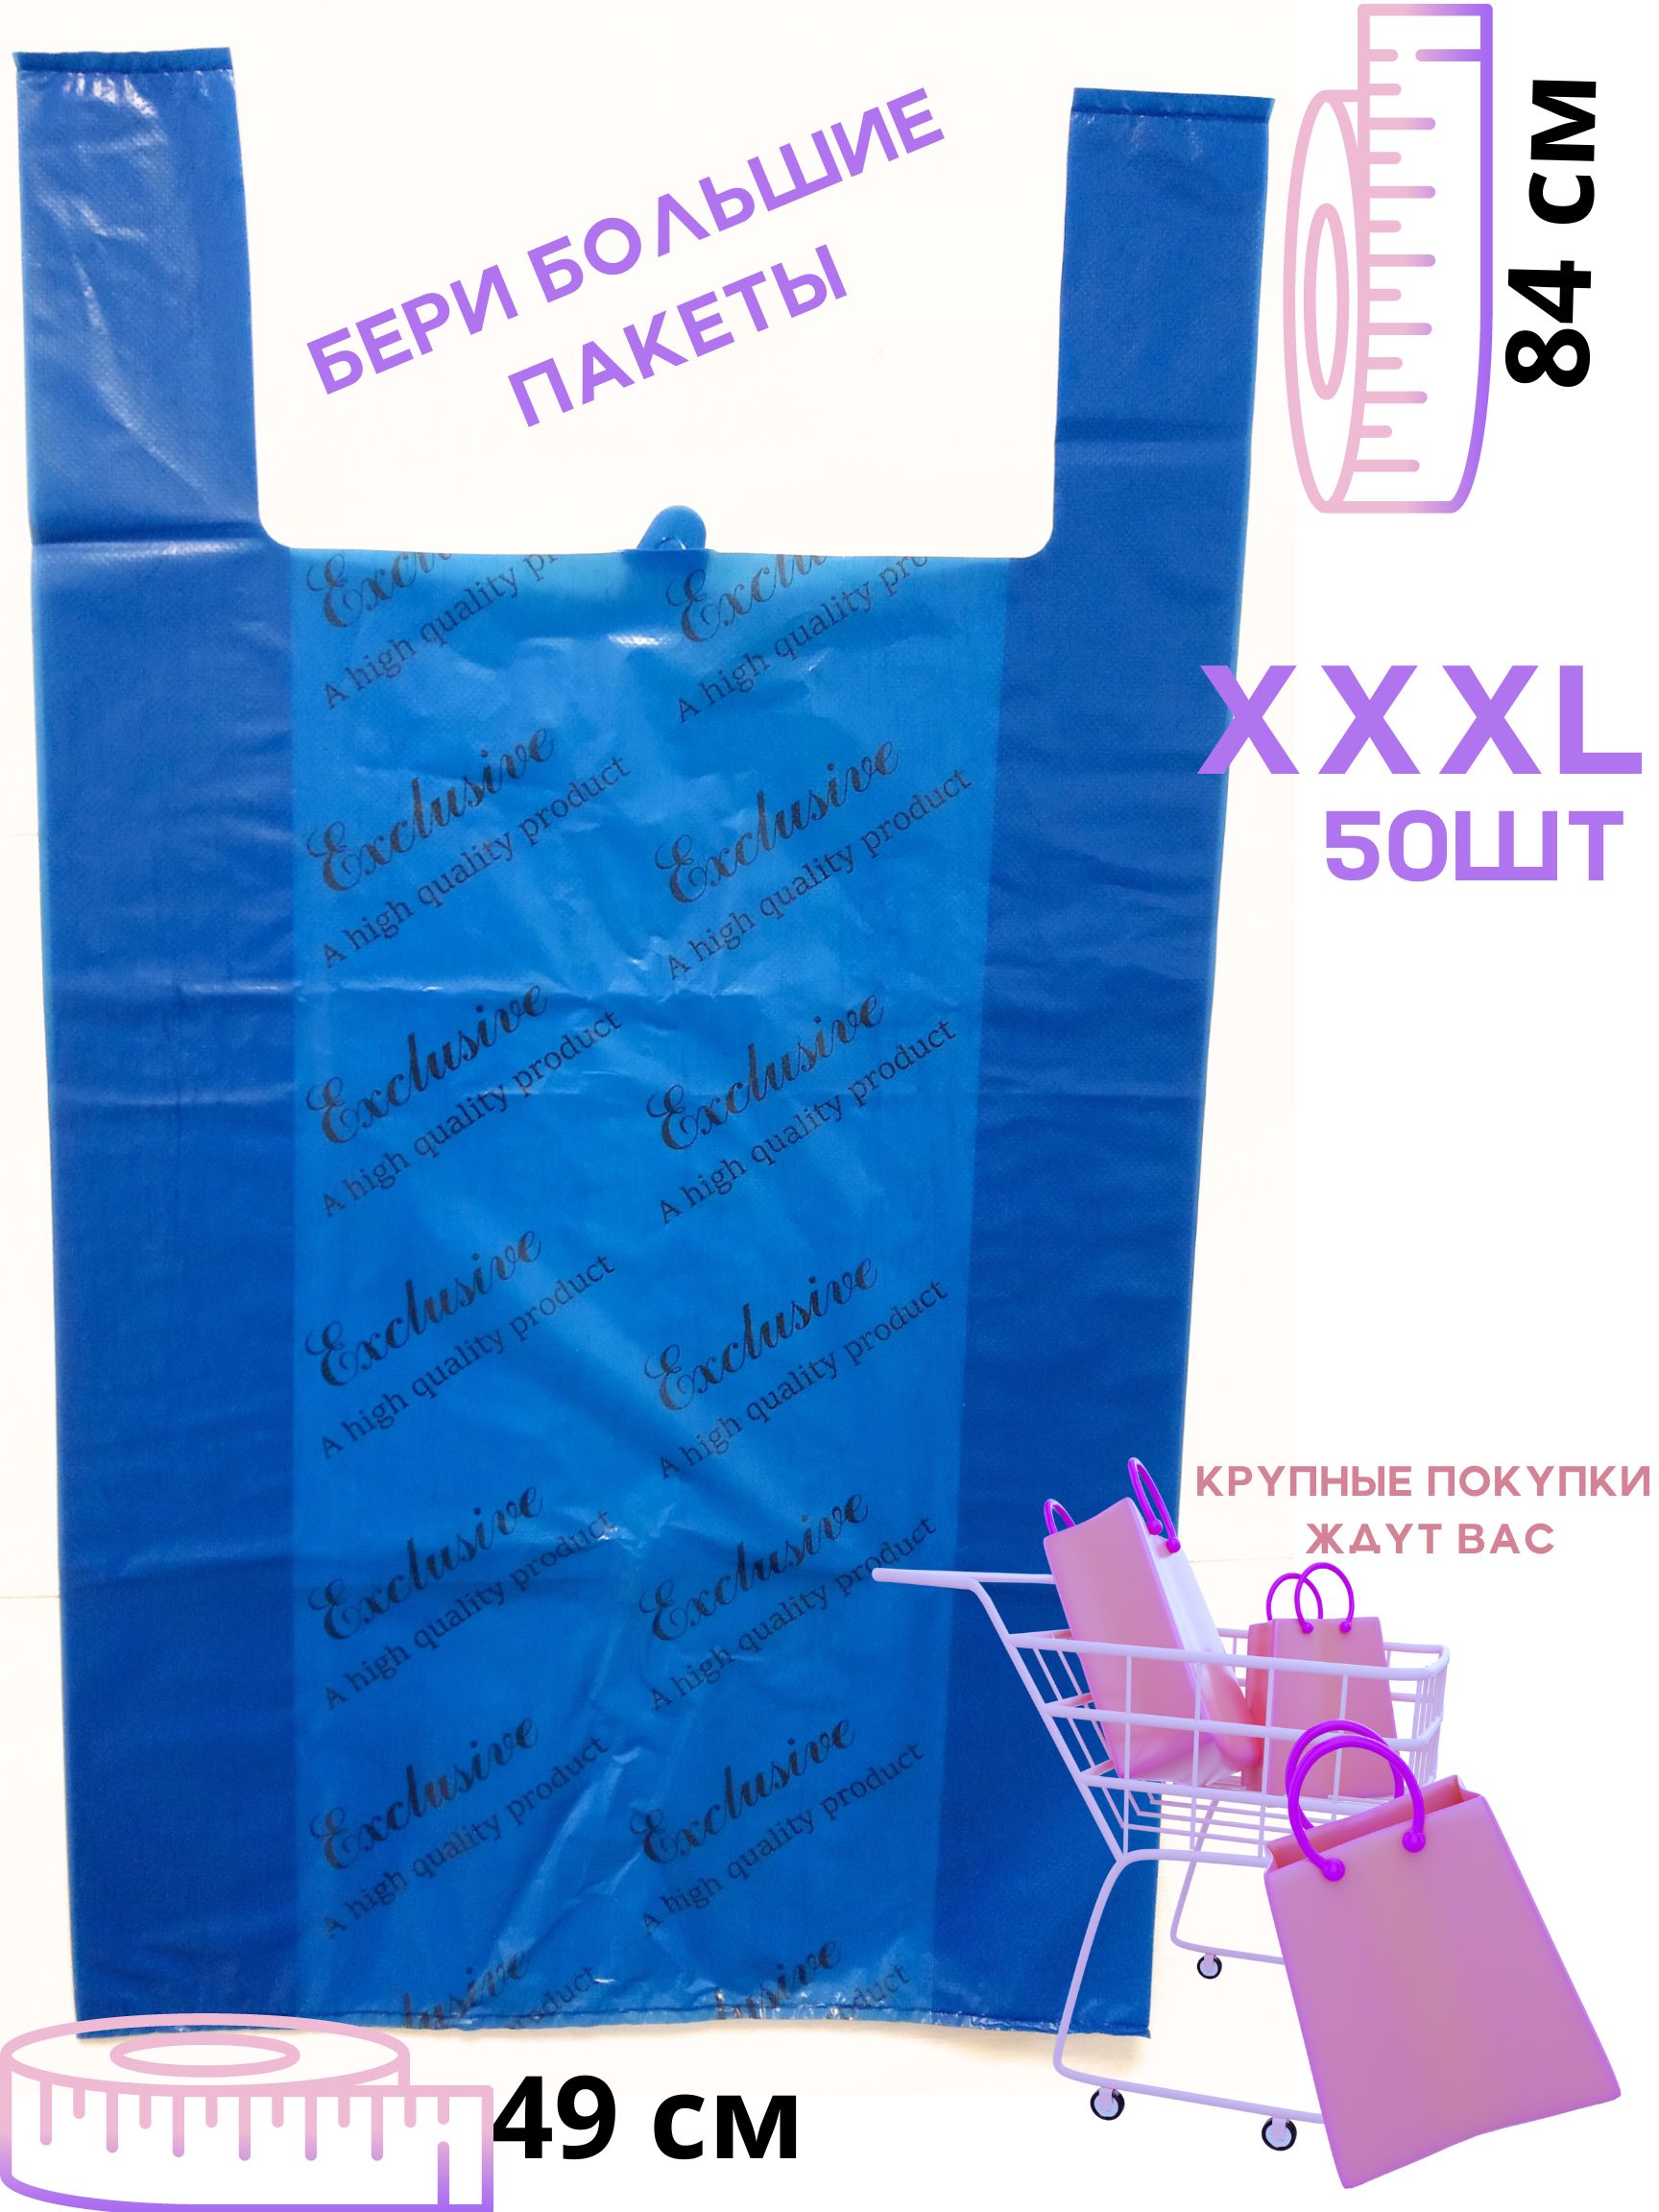 Пакет майка БытСервис Exciusive фасовочный,полиэтиленовый, синий, 50 шт,XXXL, 49х84 см